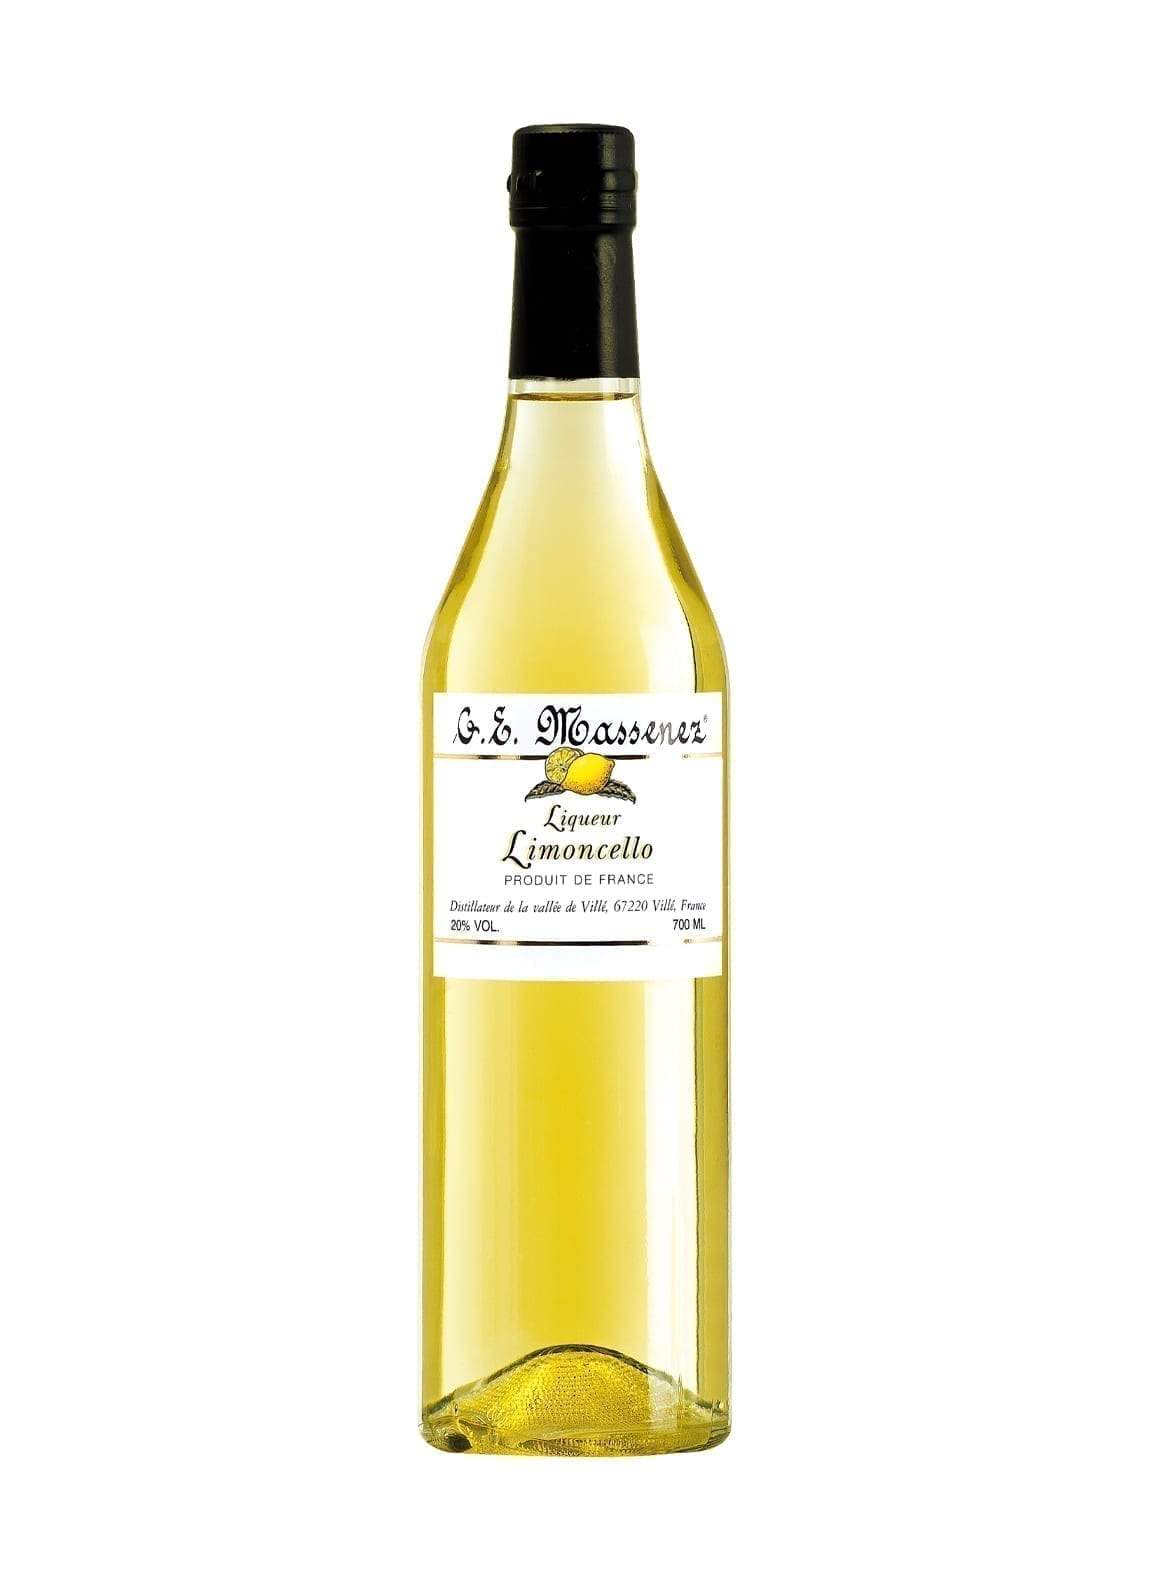 Massenez Liqueur de Limoncello 20% 700ml | Liqueurs | Shop online at Spirits of France